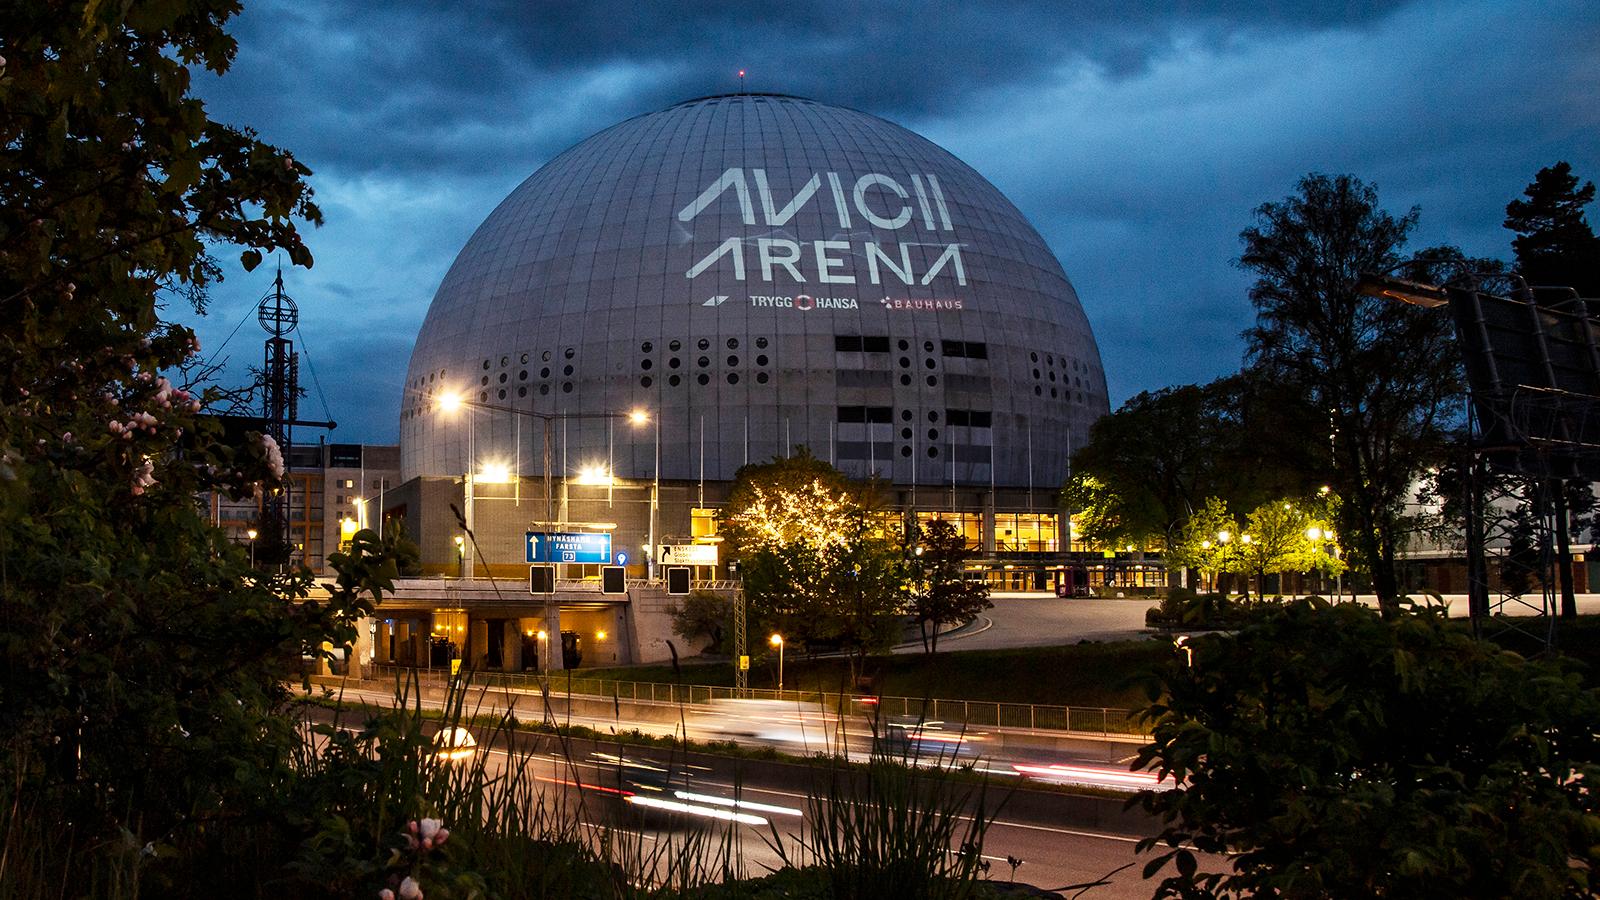 Avicii arena, mer känd som Globen. 